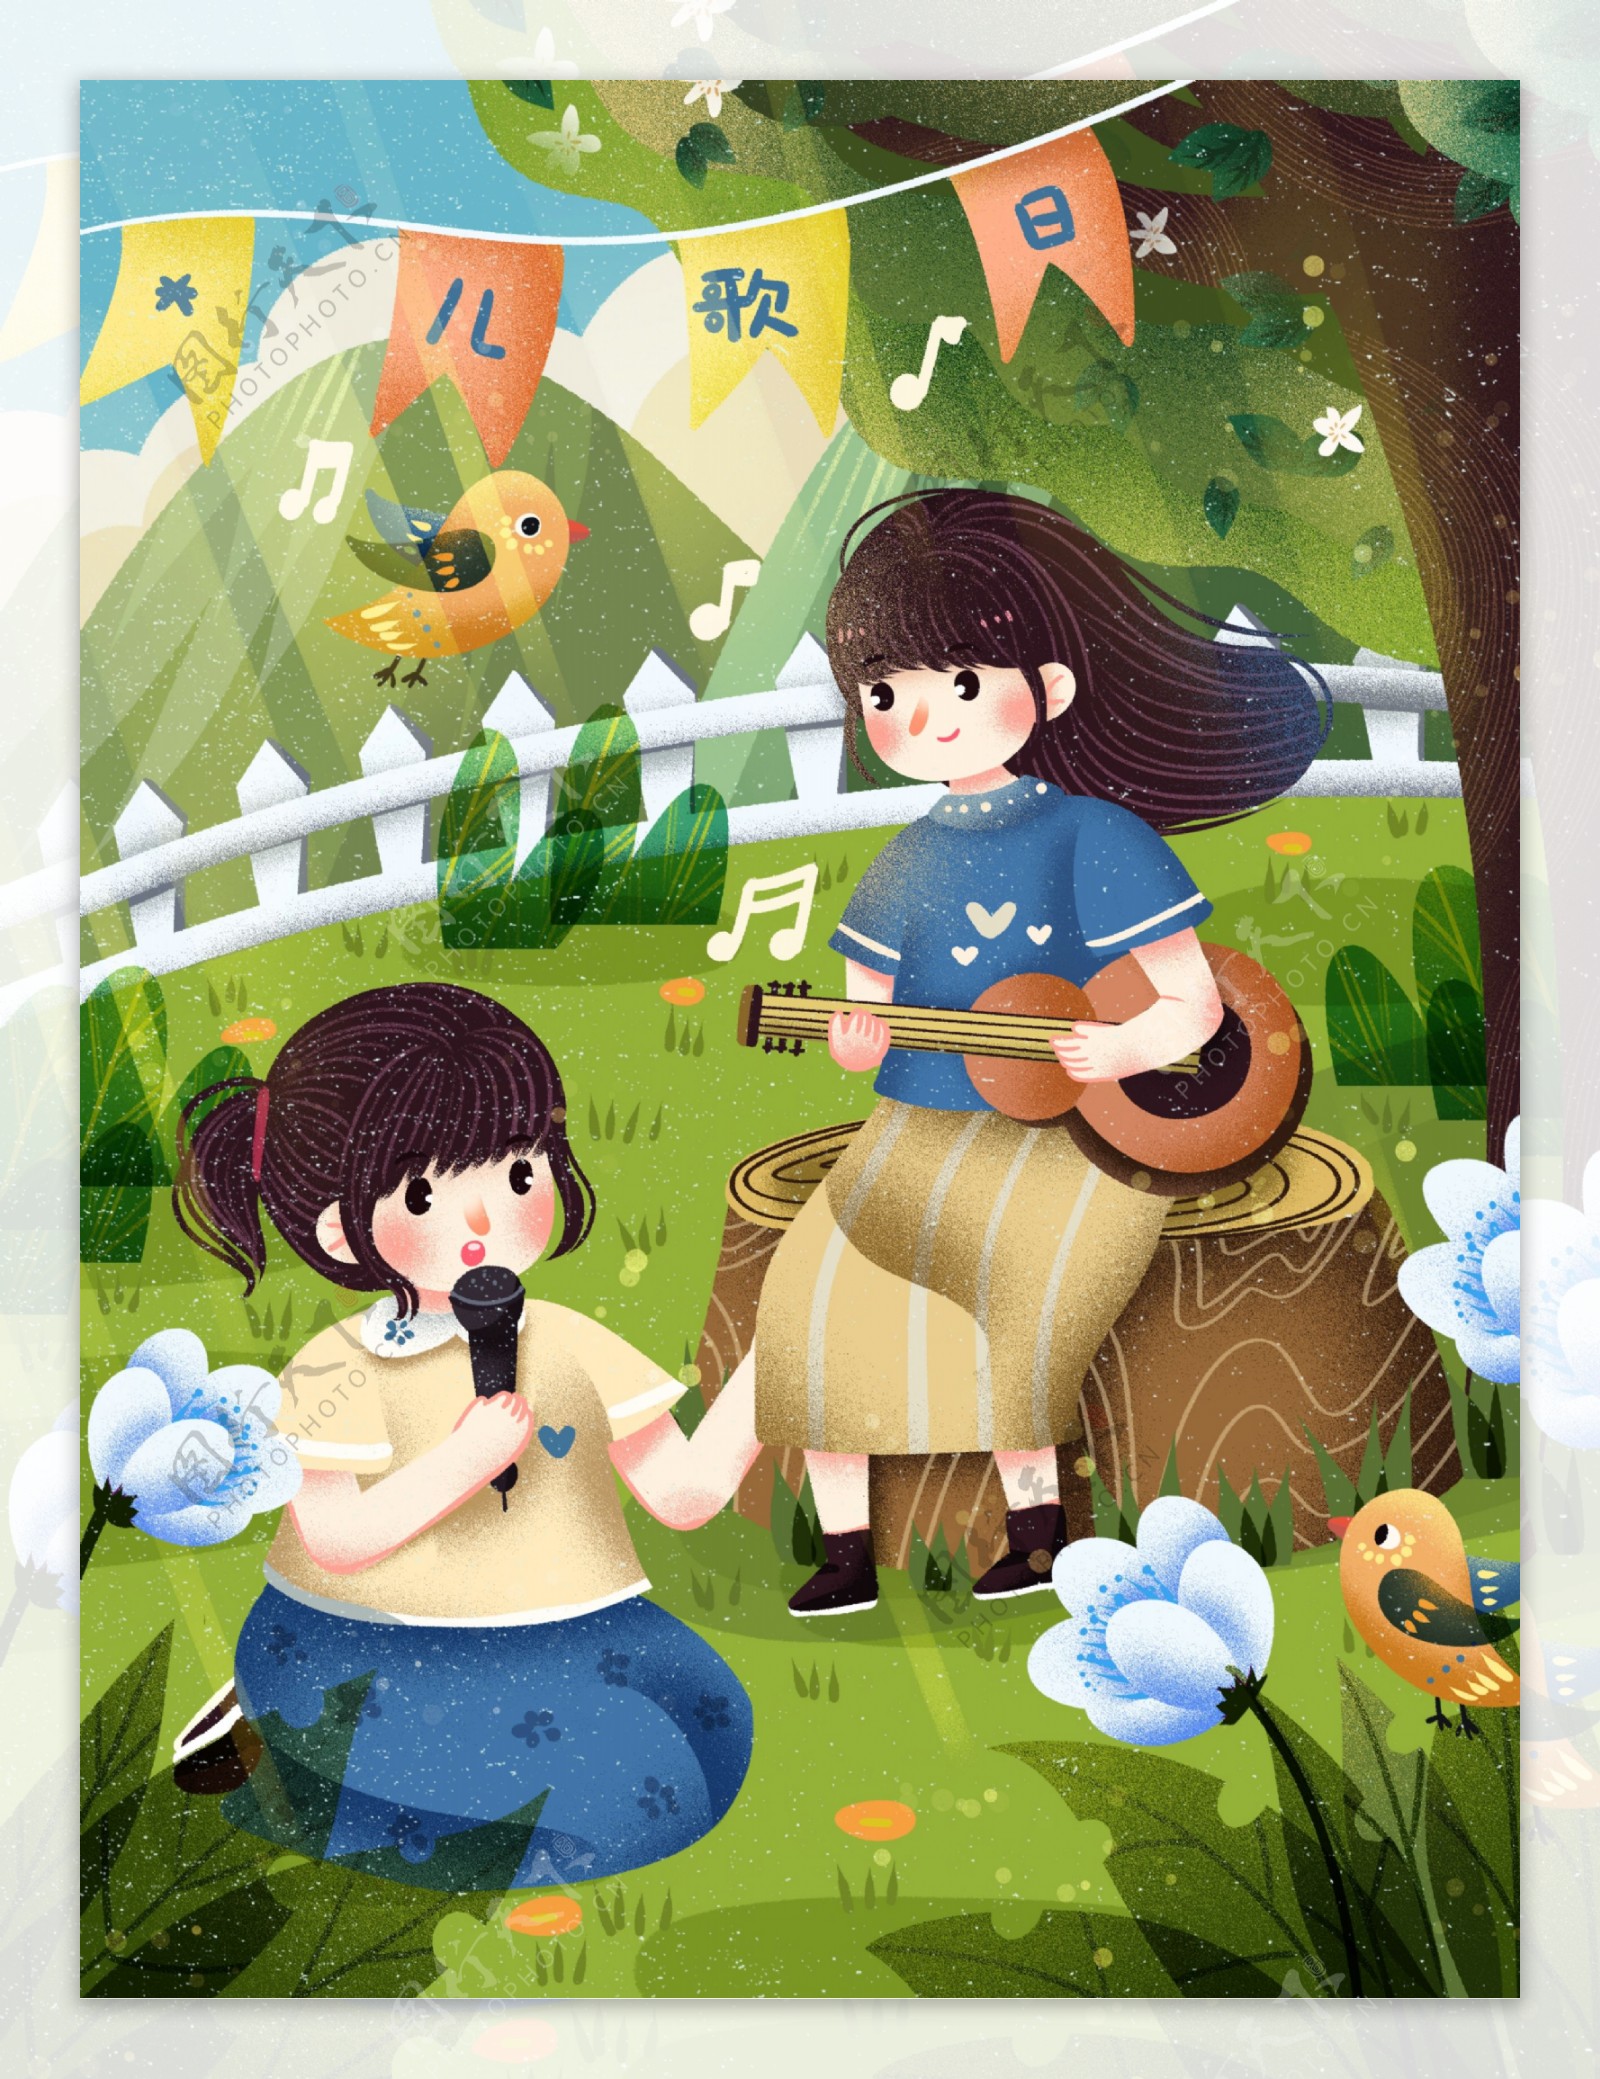 世界儿歌日小朋友在草地唱歌弹琴大自然音乐